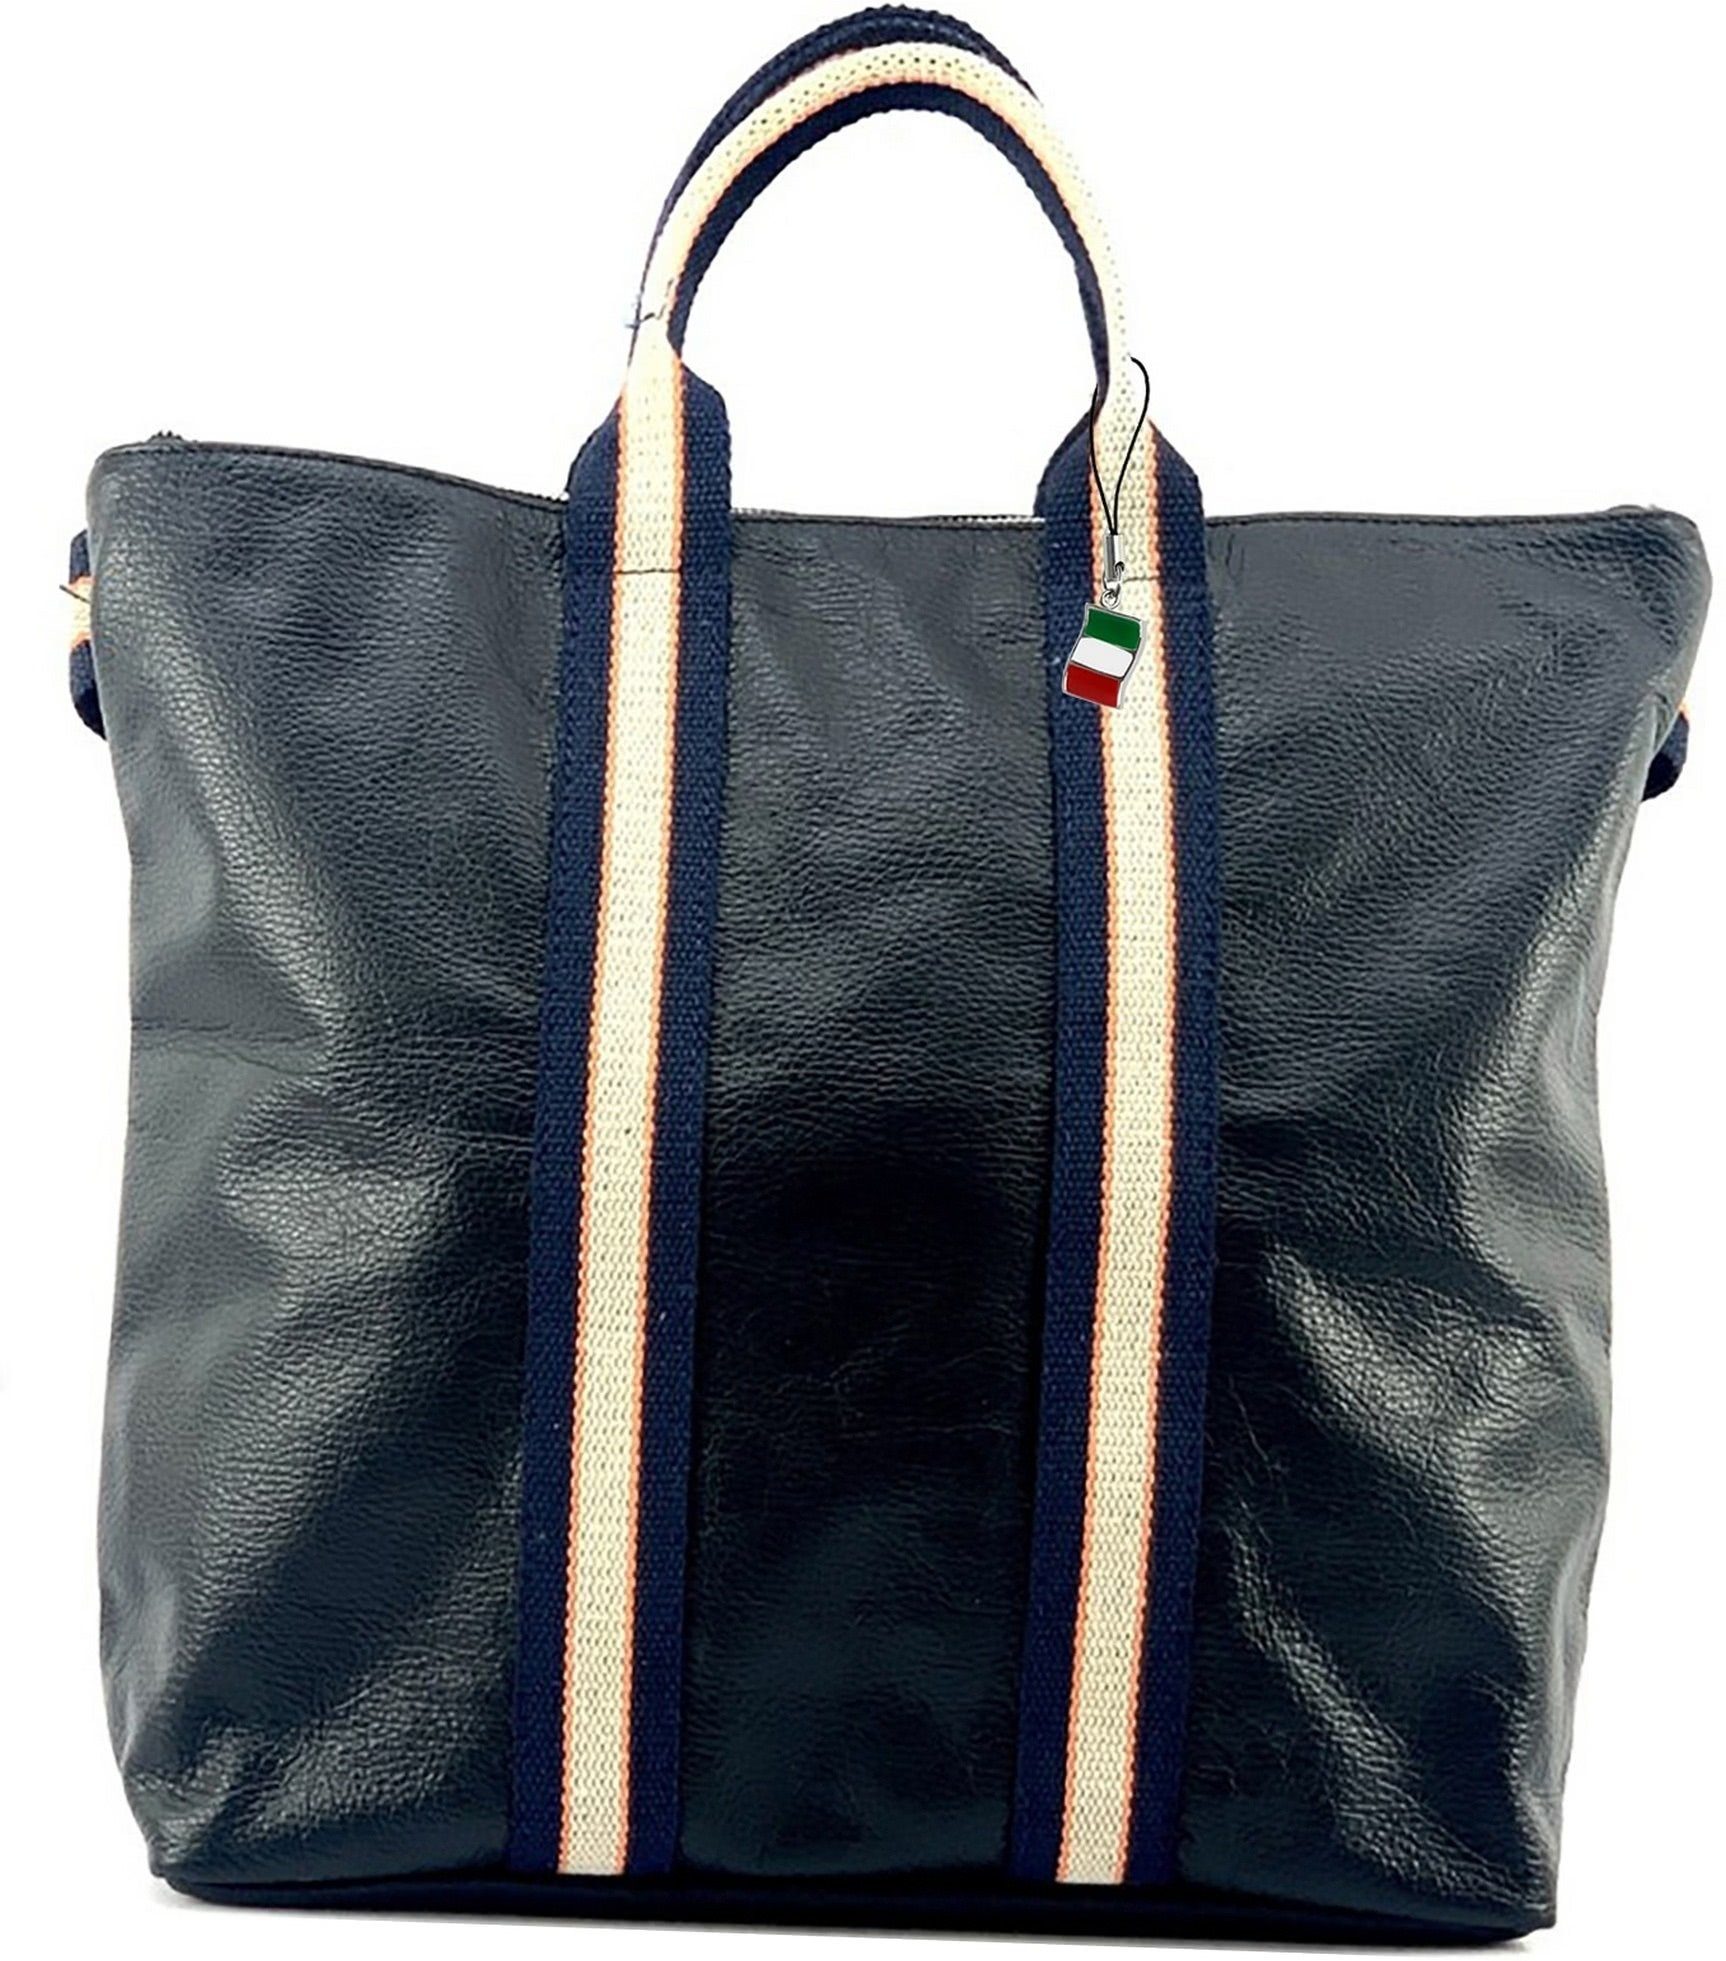 FLORENCE Handtasche Florence Damen Rucksack Daypack, Damen Tasche Echtleder schwarz, blau, beige, Made-In Italy